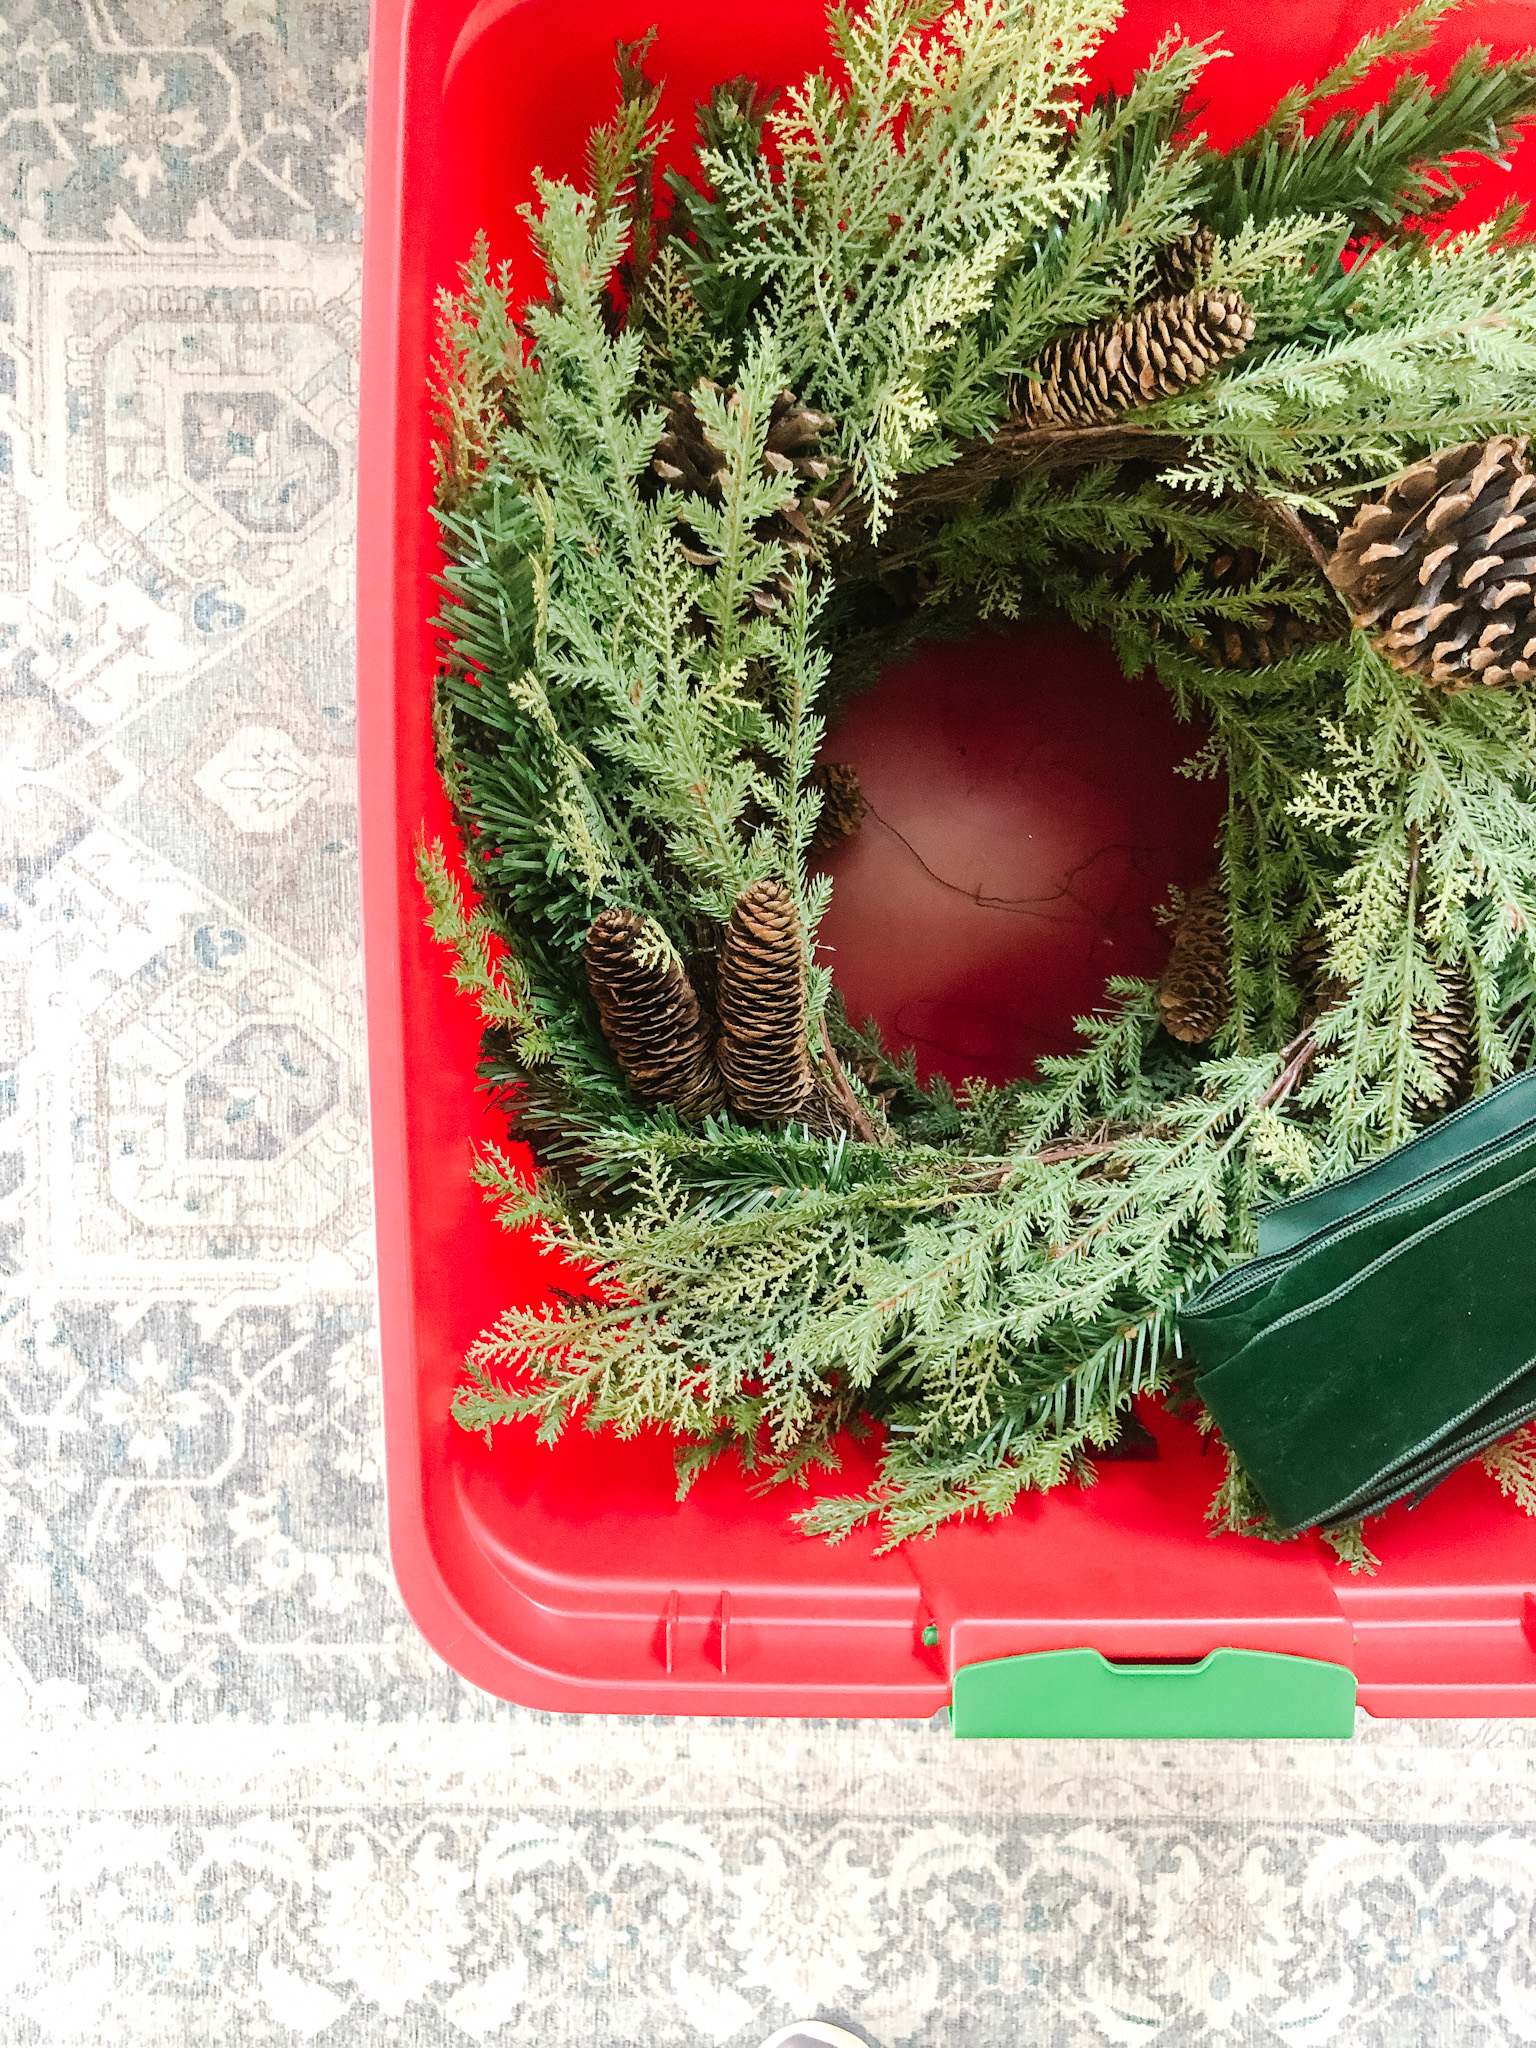 winter wreath inside red storage bin